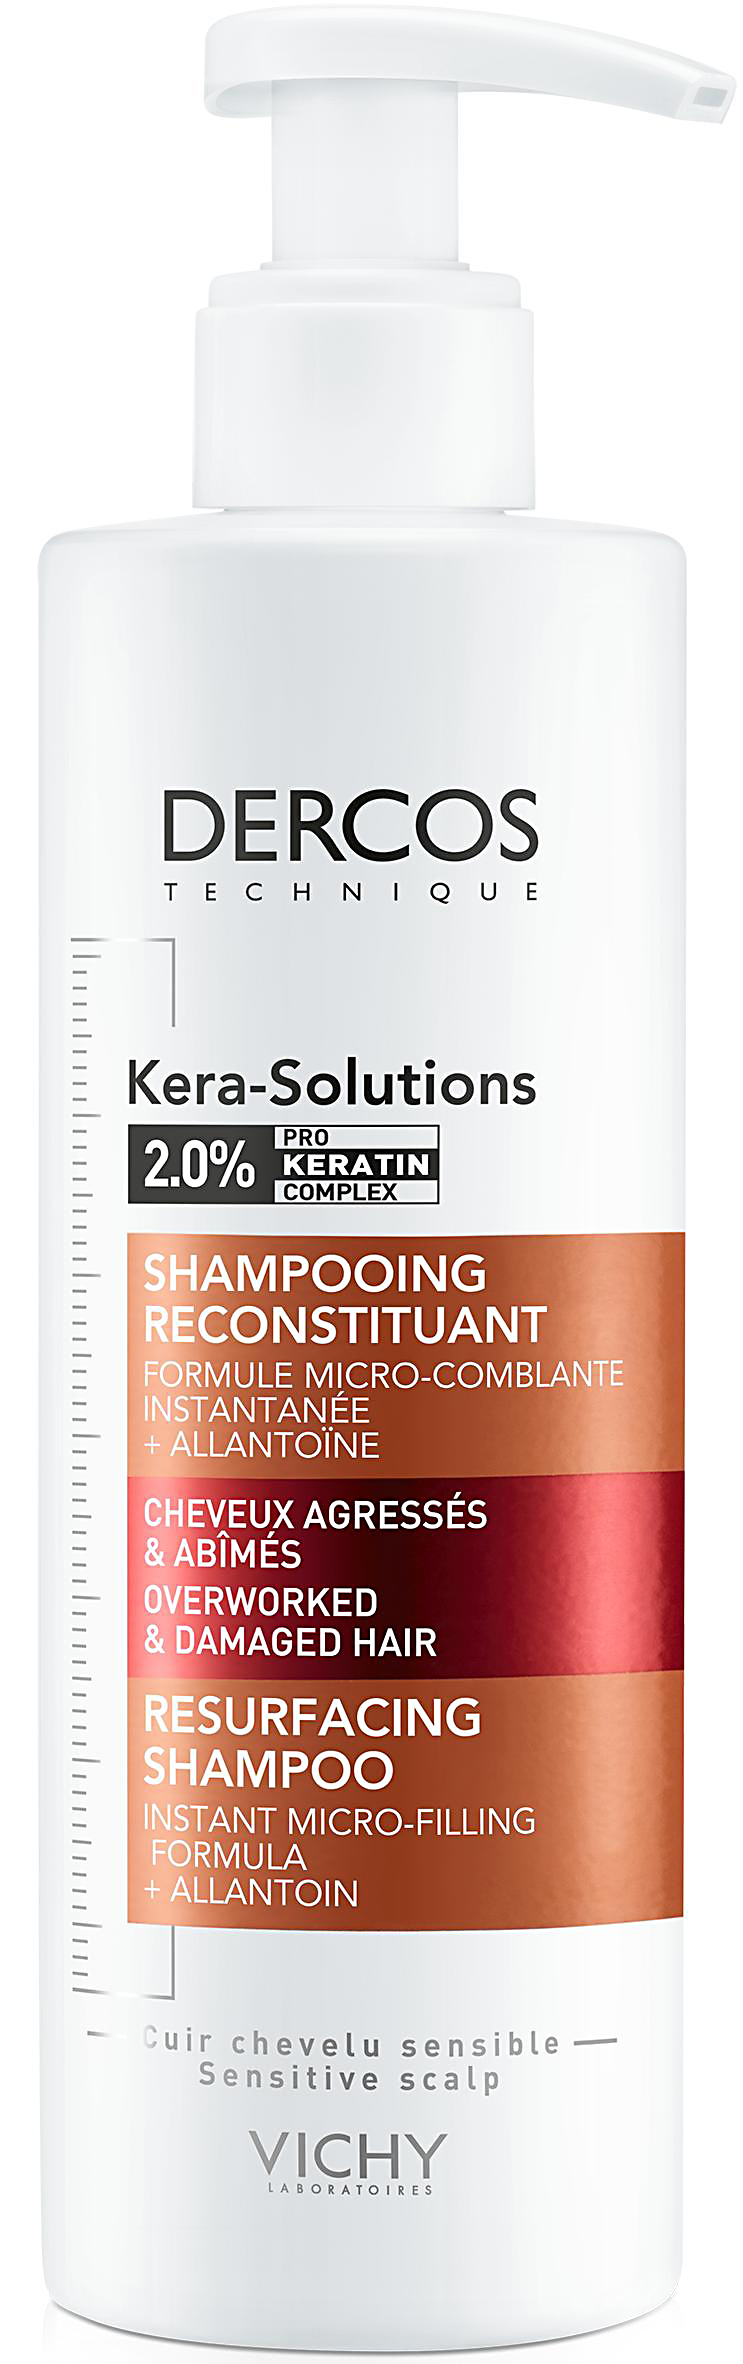 Dercos kera-solutions шампунь с комплексом про-кератин, реконструирующий поверхность волоса 250мл Vichy (Виши)